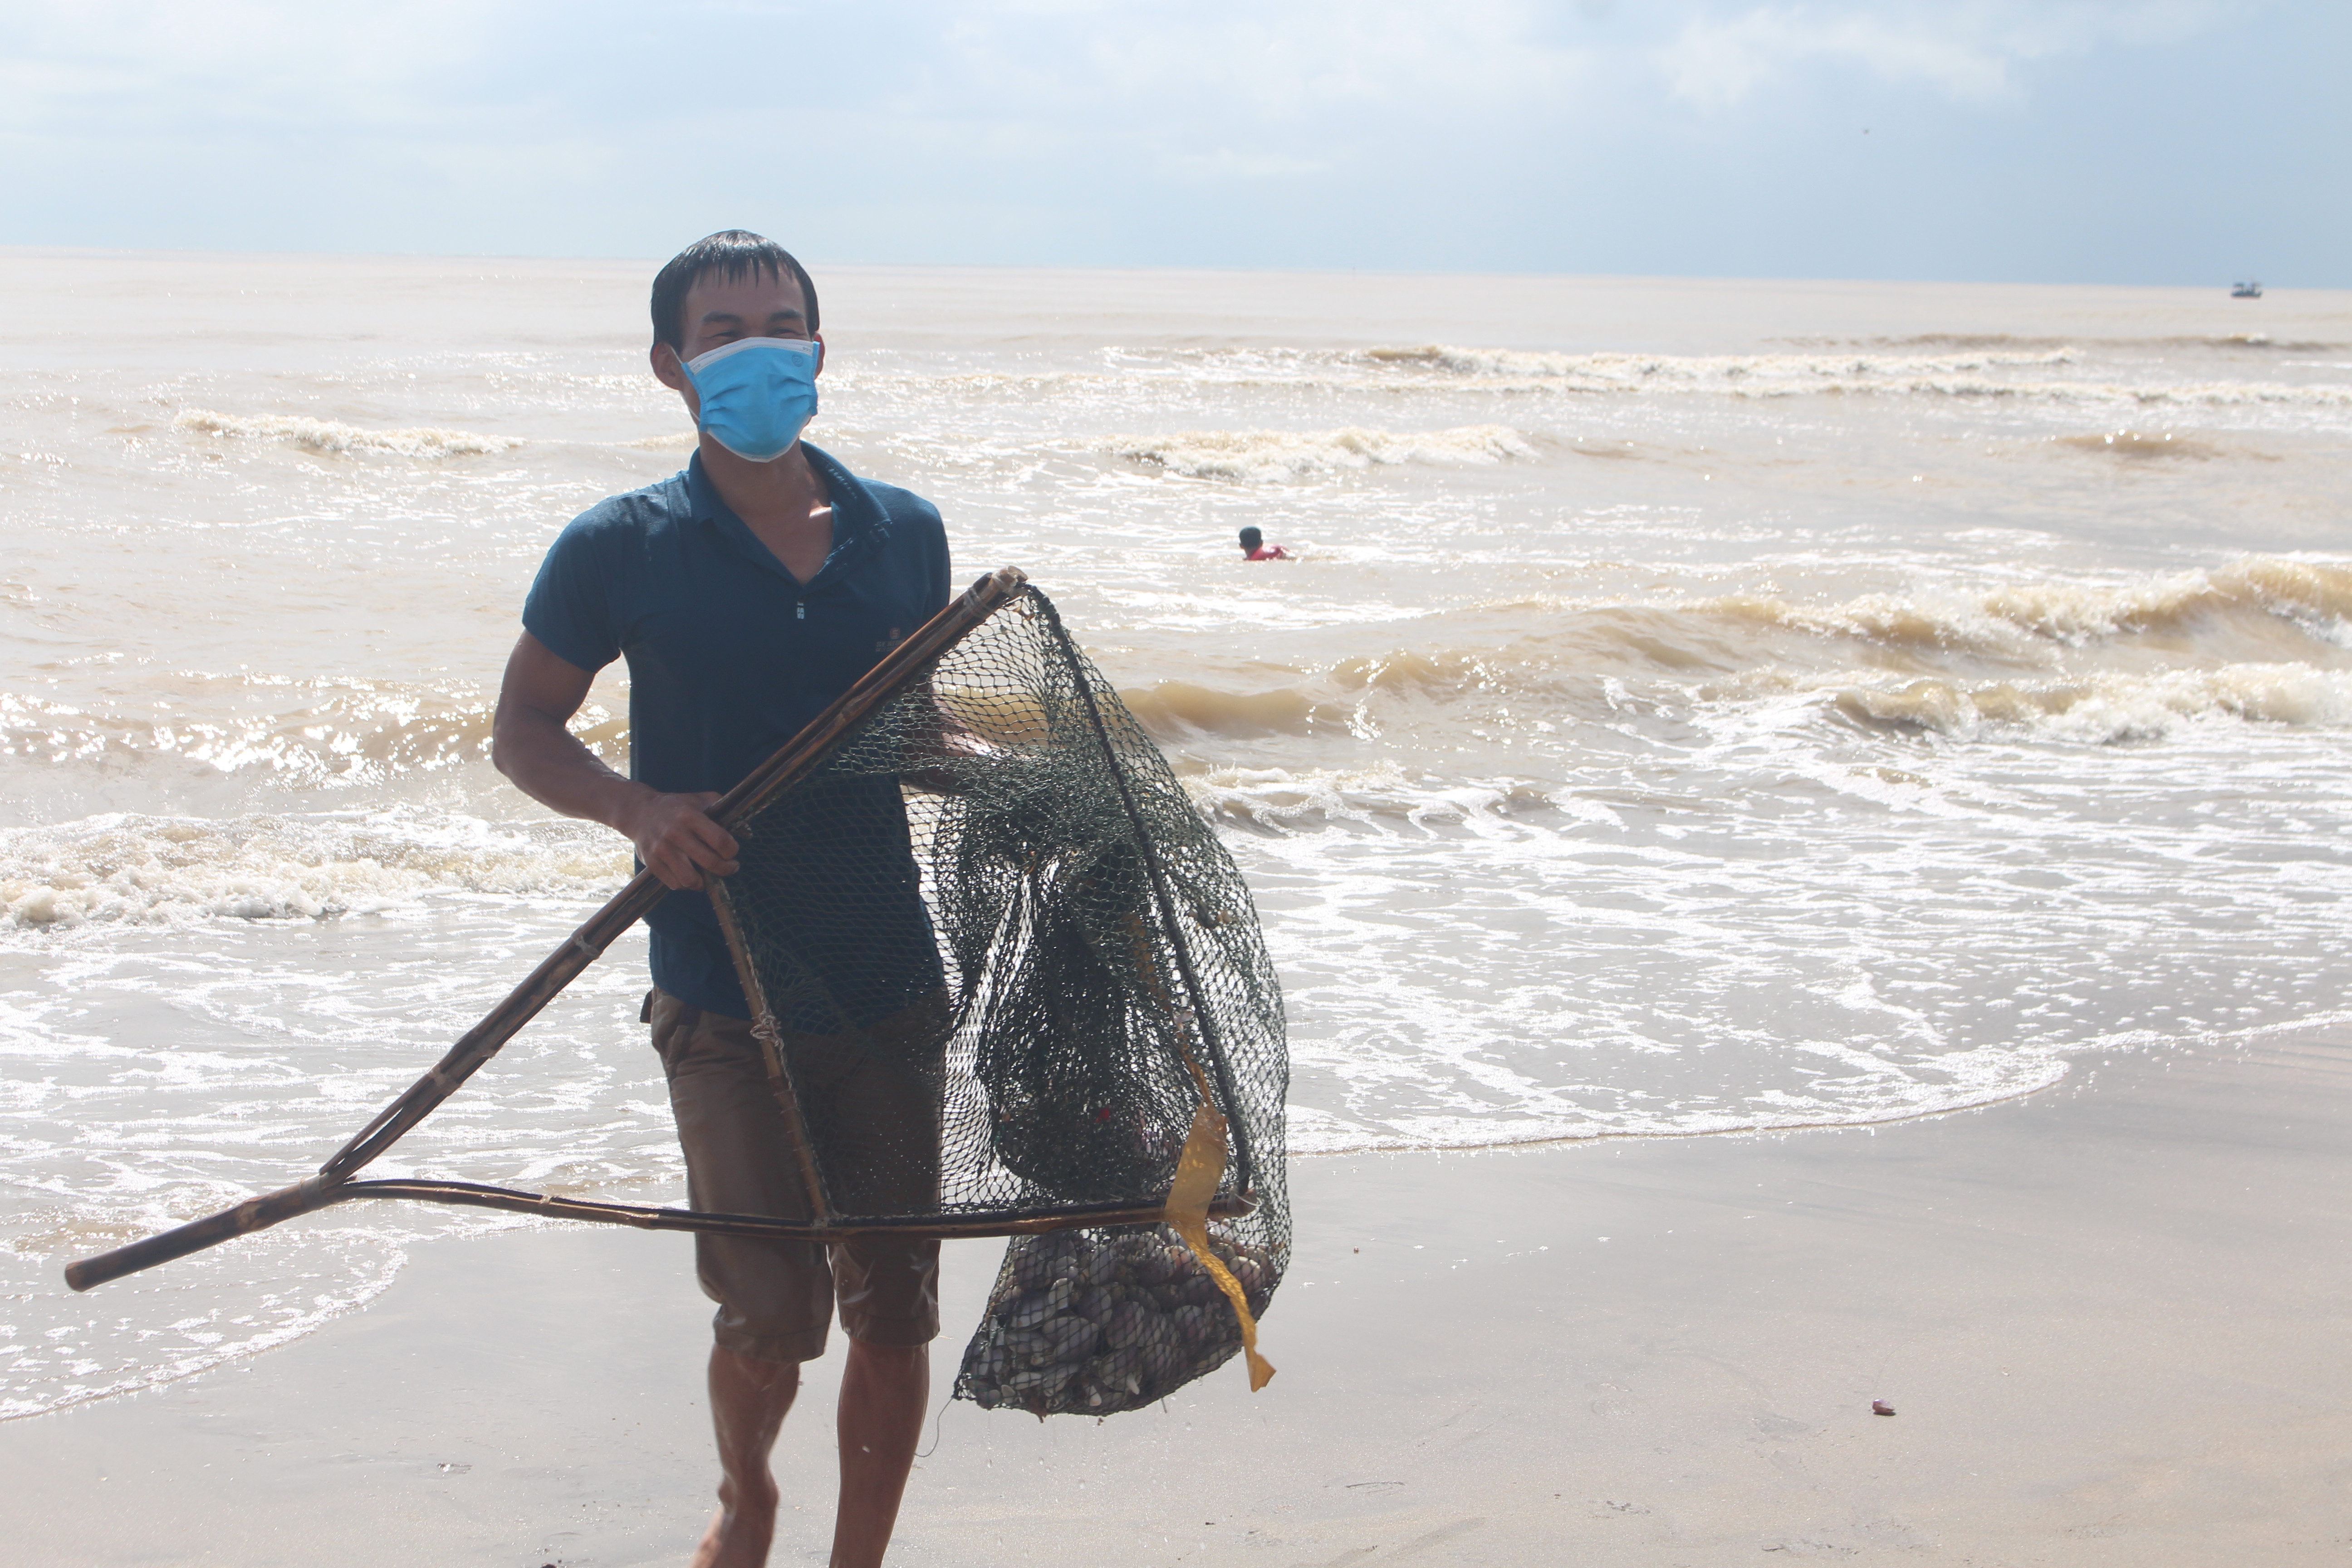 Với chiếc vợt được gắn lưới bao quanh, sau khoảng 5 – 10 phút, người dân đã vớt lên hàng chục kg ngao biển.